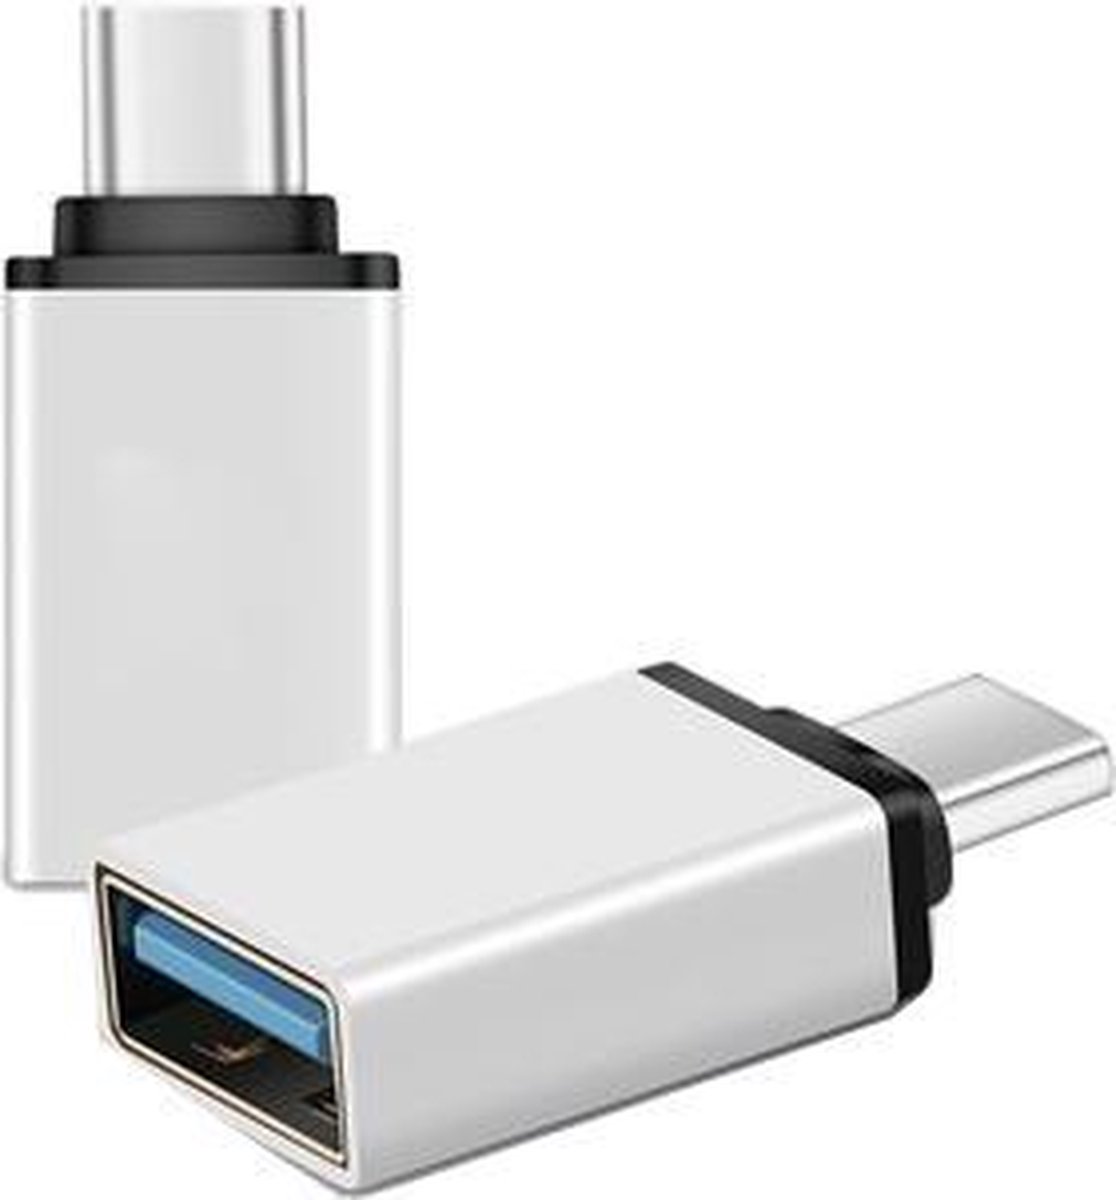 Merkloos USB-C naar USB-A Adapter [2-Pack], Thunderbolt 3 naar USB 3.0 Adapter | Compatible MacBook Pro 2019/2018/2017, MacBook Air 2018, Pixel 3, Dell XPS en meer Type-C Devices - Merkloos